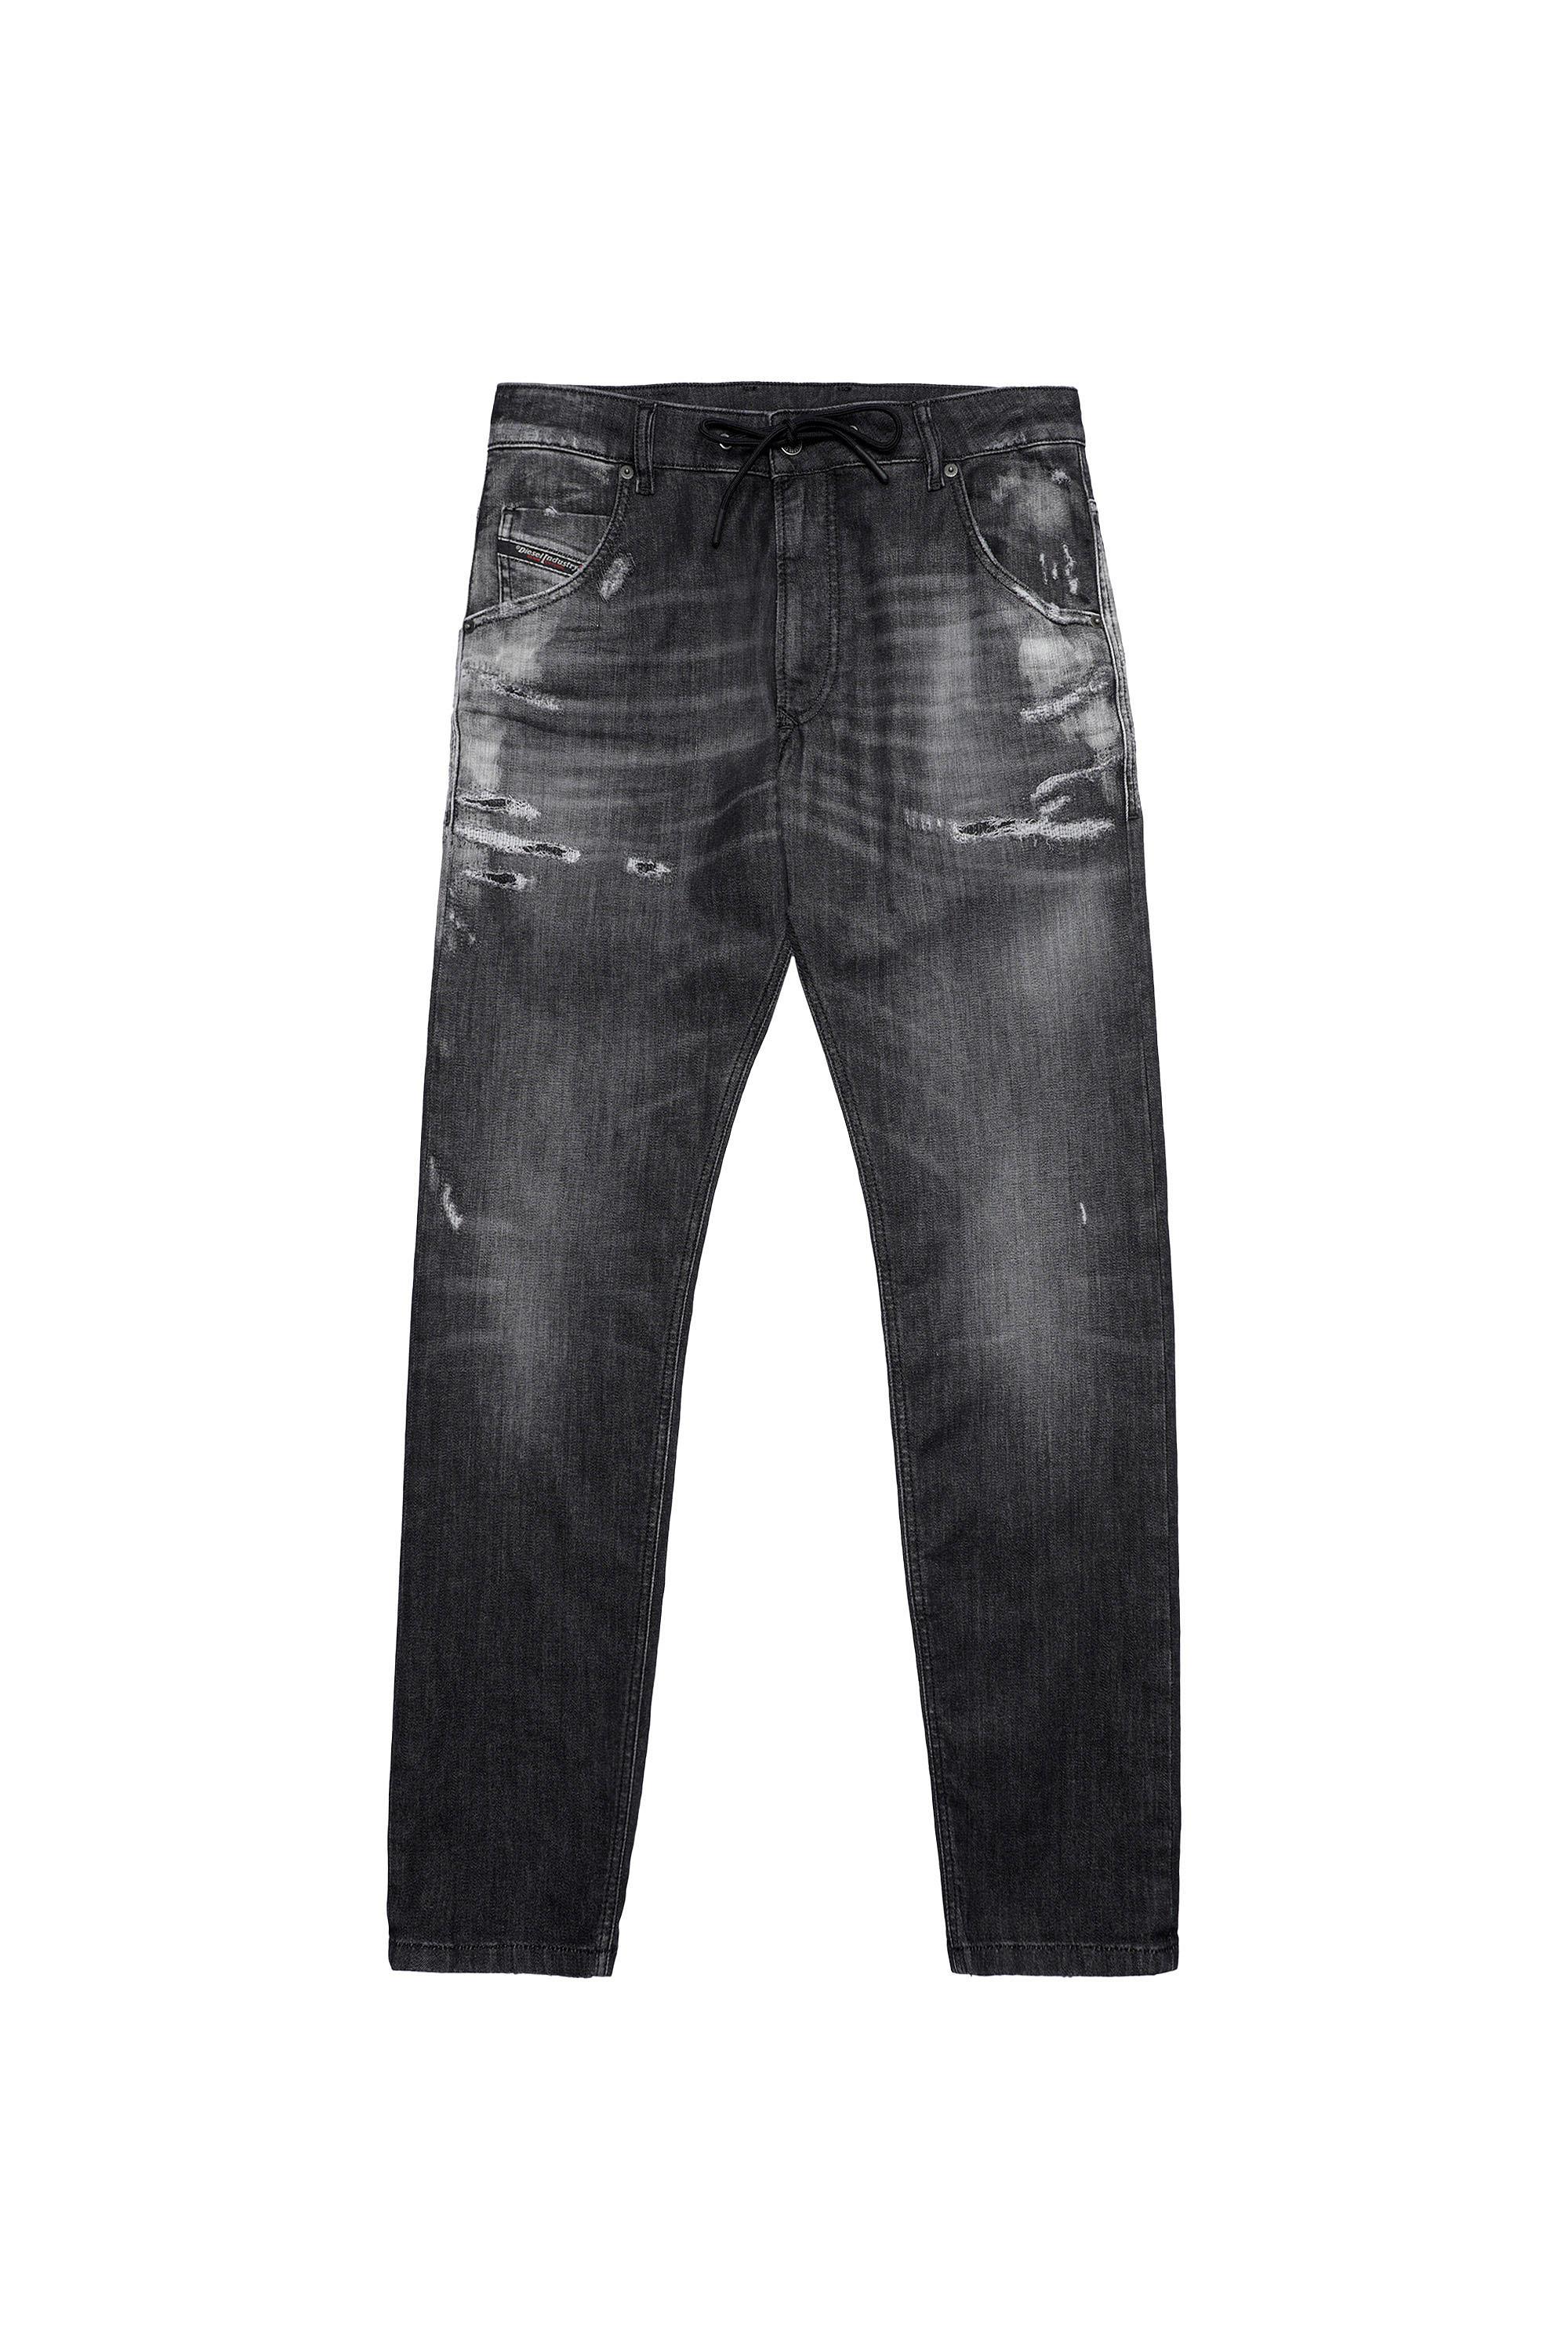 Diesel - Krooley Tapered JoggJeans® 09B53, Black/Dark Grey - Image 2